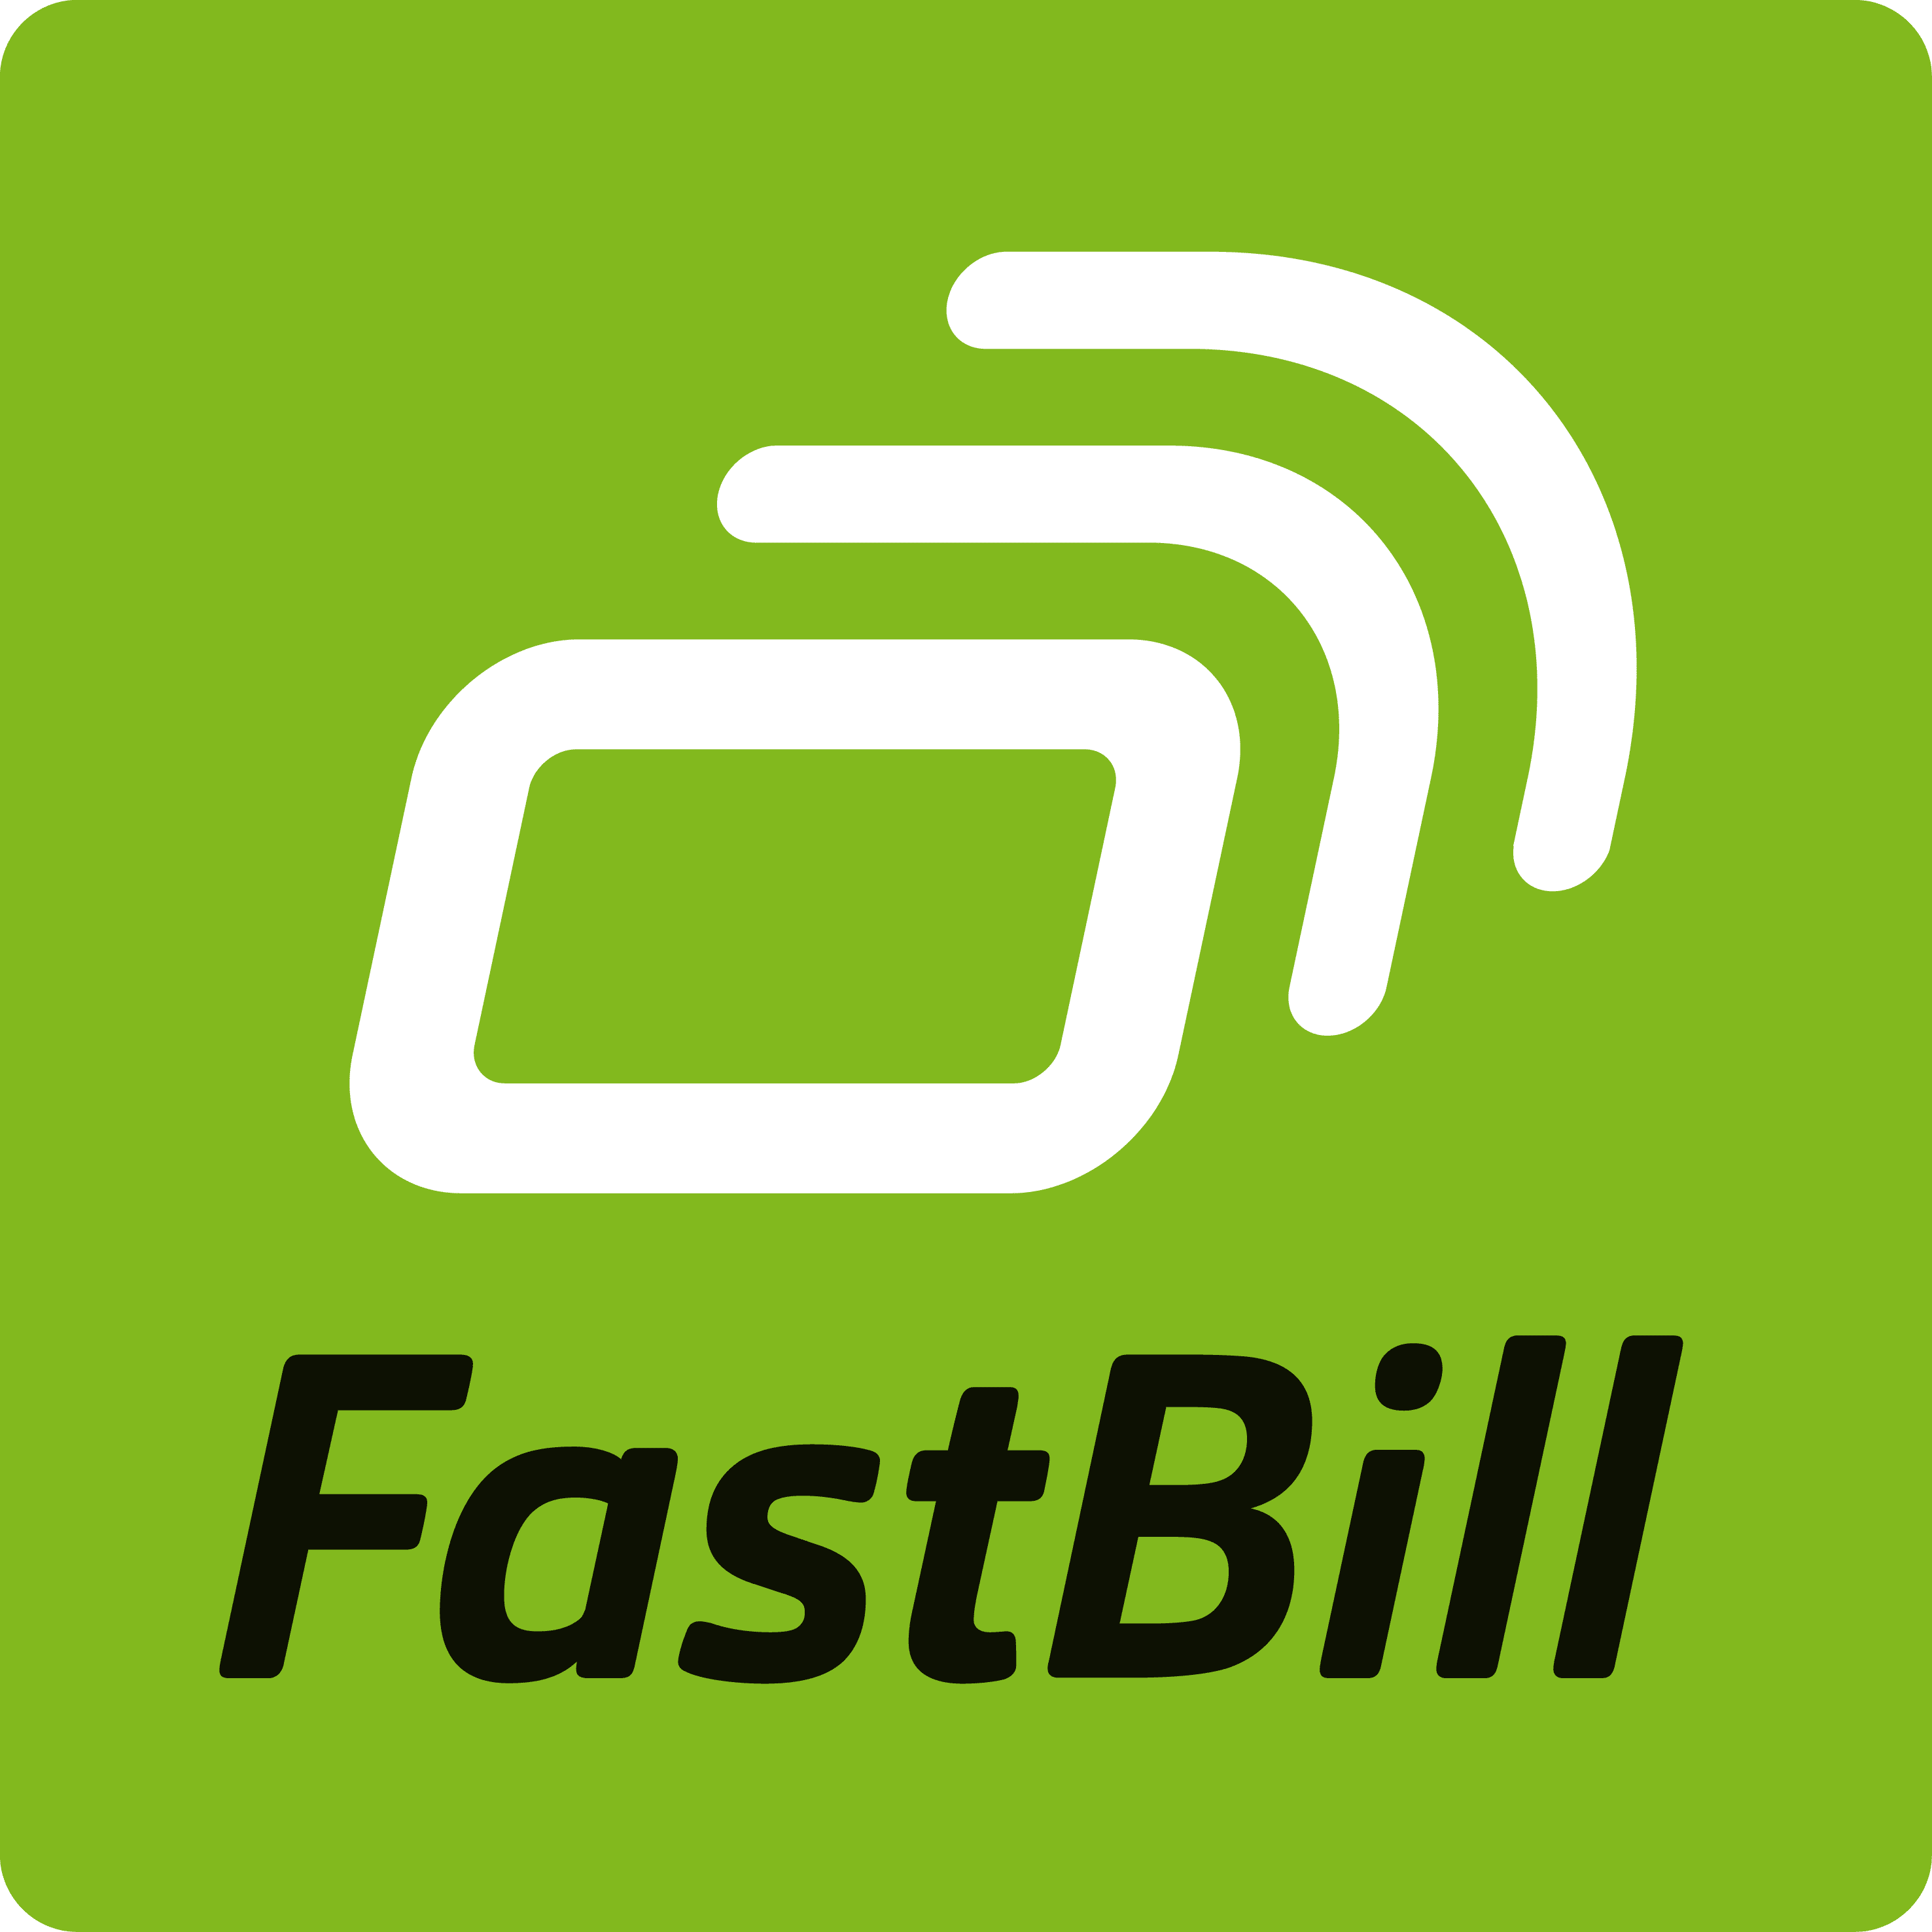 blog.fastbill.com logo